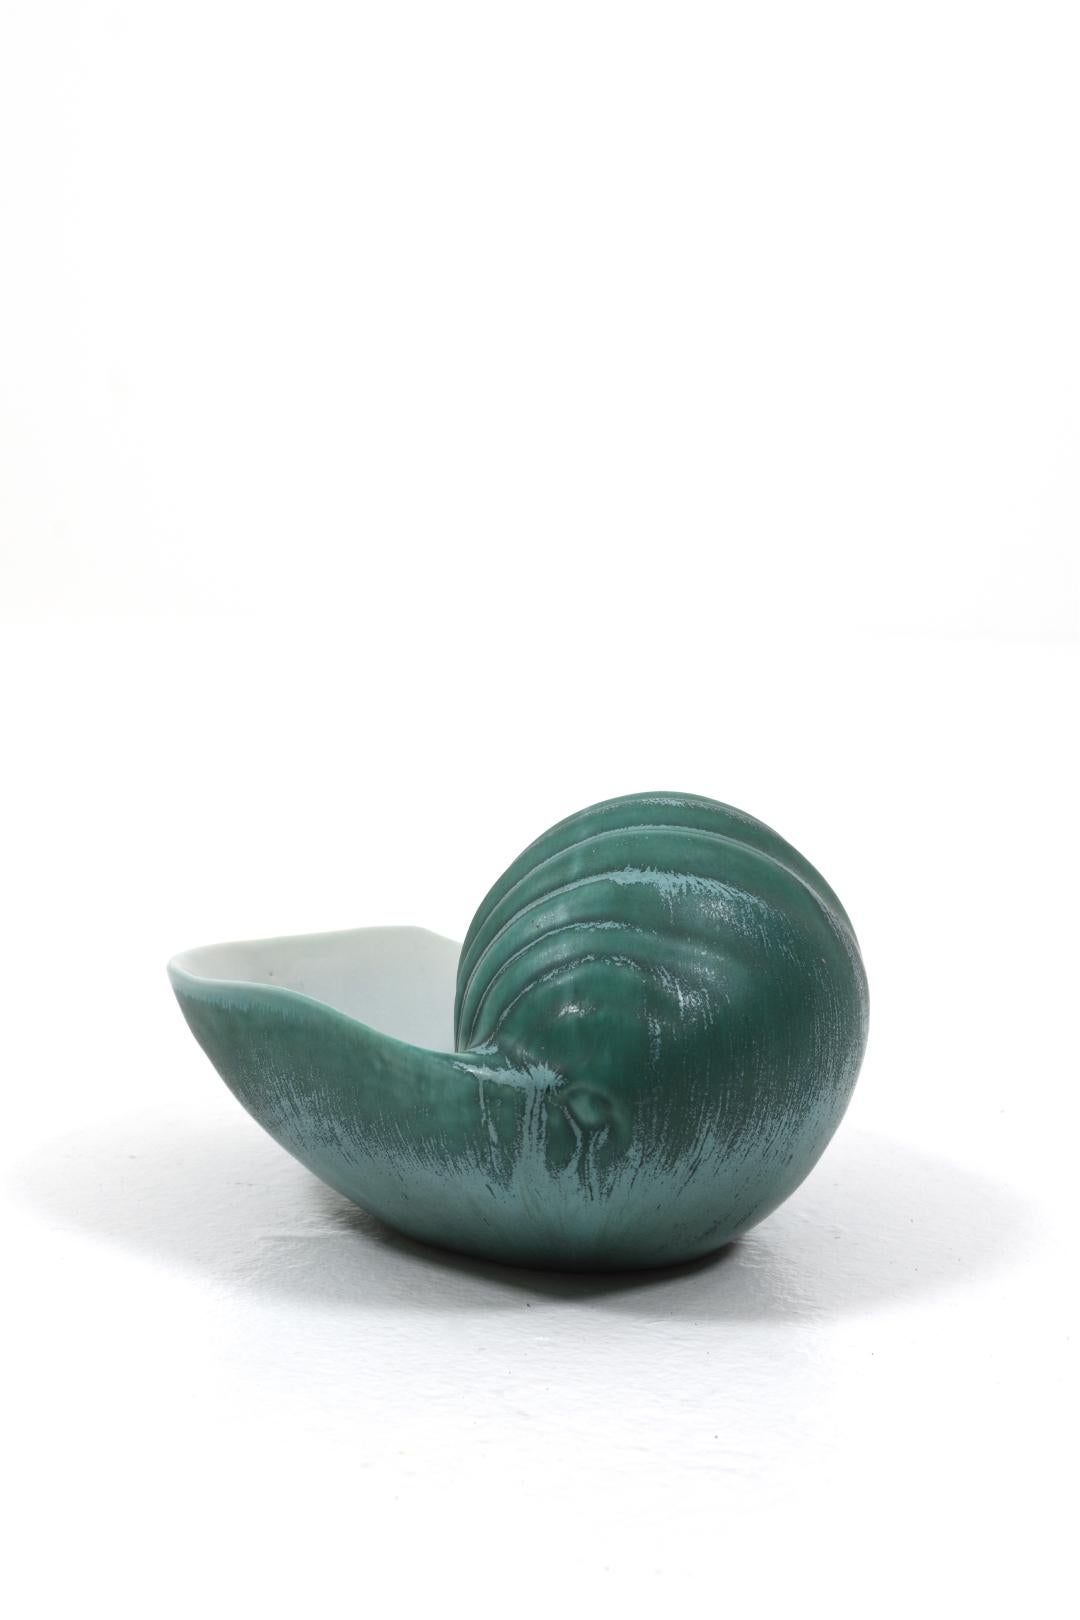 Le bol en forme de coquillage conçu par Ewald Dahlskog pour Bo Fajans est une magnifique création en céramique qui capture la beauté et l'enchantement de la nature. Fabriqué avec beaucoup de soin et d'habileté, ce bol en coquillage unique respire